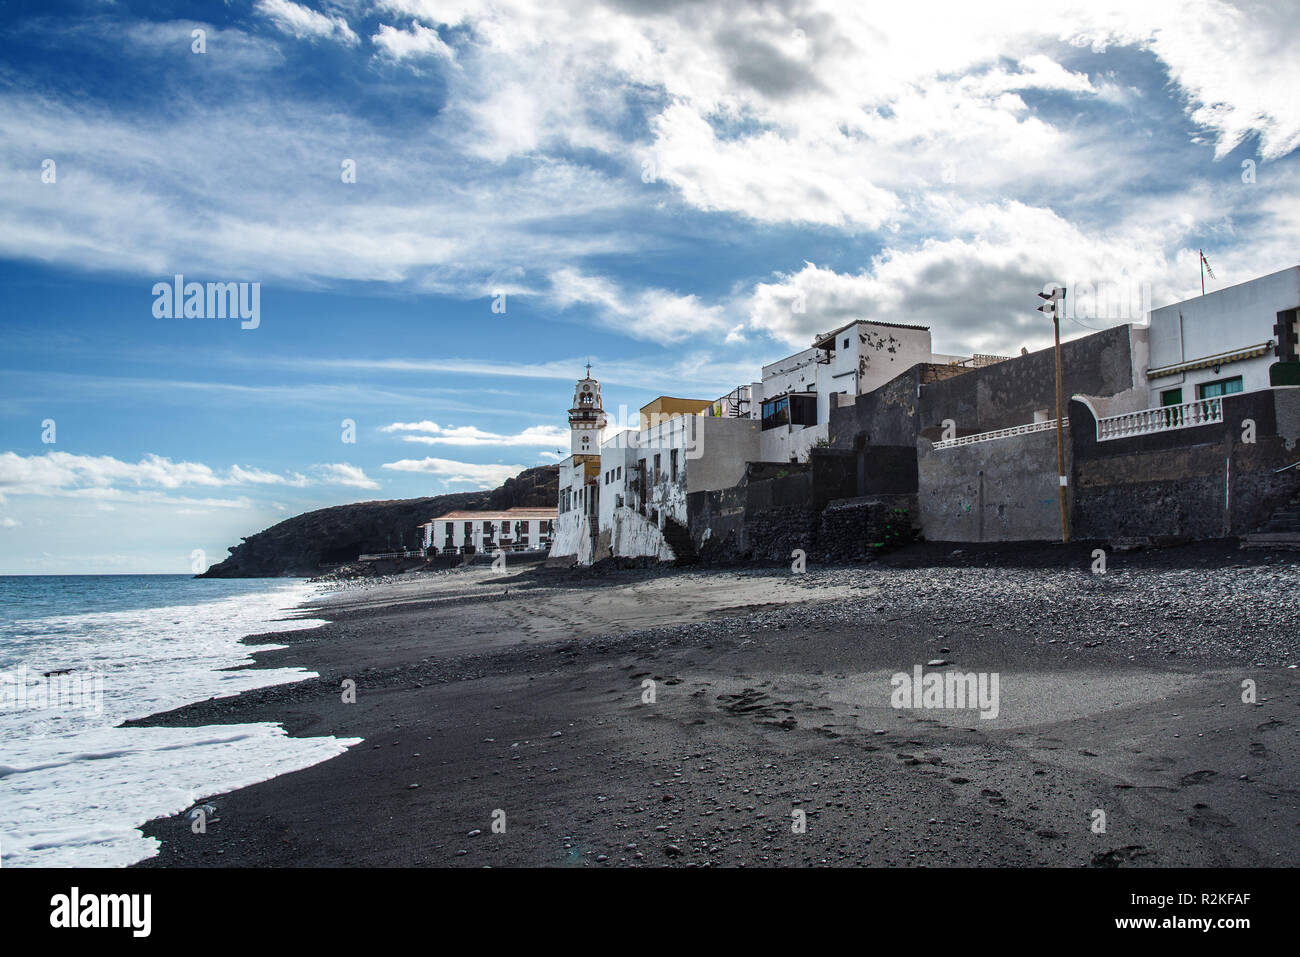 Playa de arena con vistas a Candelaria, una pequeña comunidad en la costa noreste de la isla de Tenerife. Foto de stock